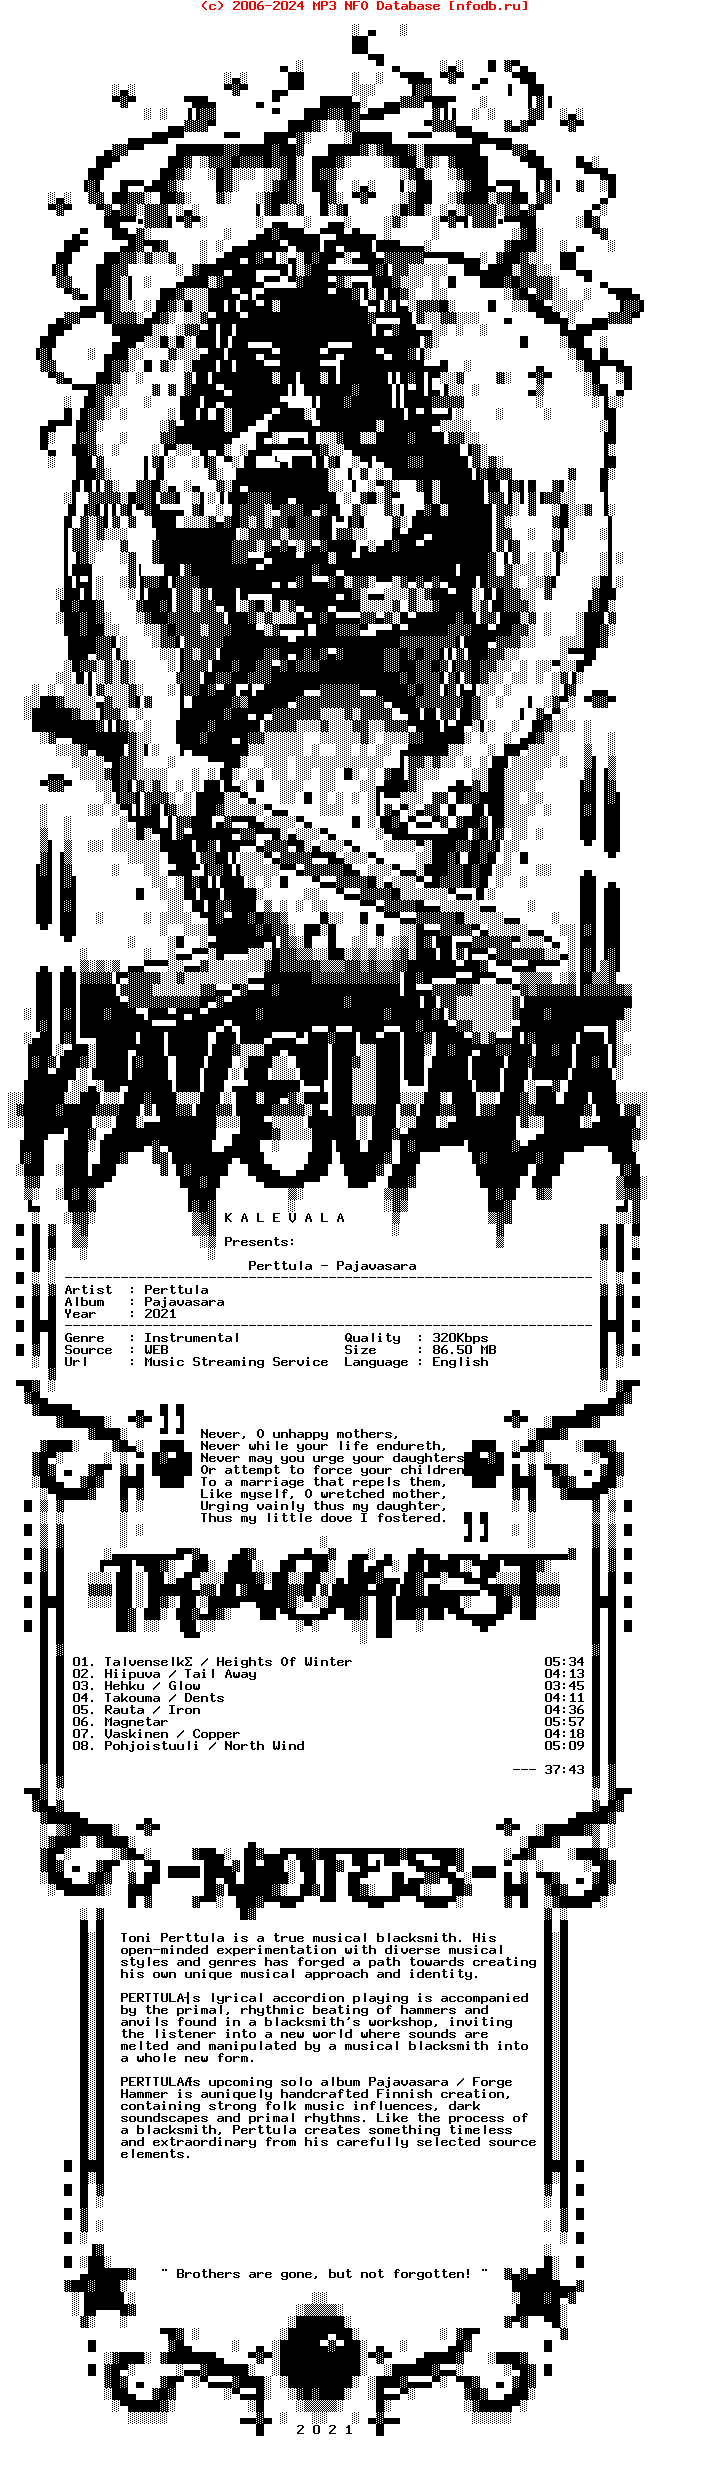 Perttula-Pajavasara-WEB-2021